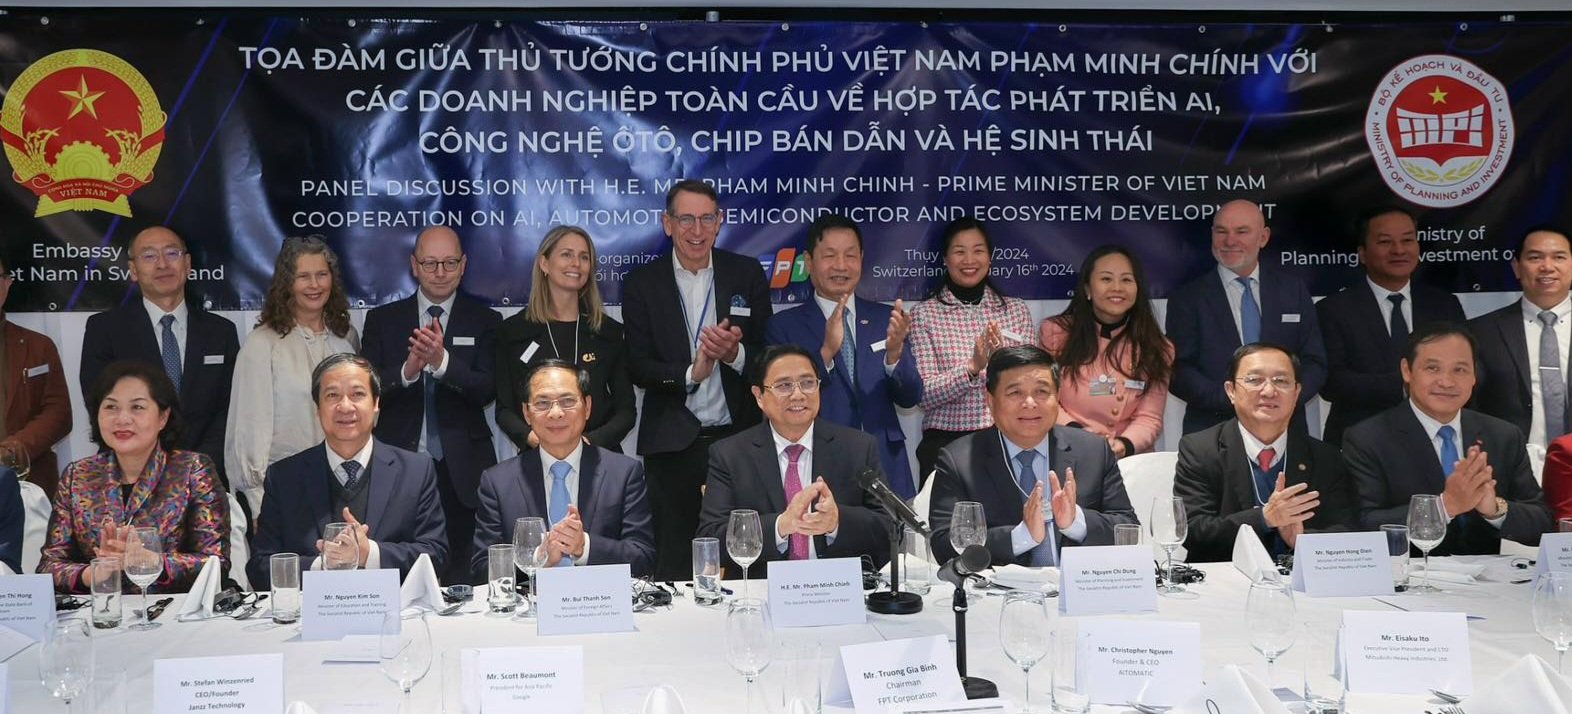 Thủ tướng Phạm Minh Chính và các thành viên Chính phủ tham dự Tọa đàm với các doanh nghiệp toàn cầu về hợp tác phát triển AI, công nghệ ô tô, chíp bán dẫn và hệ sinh thái.